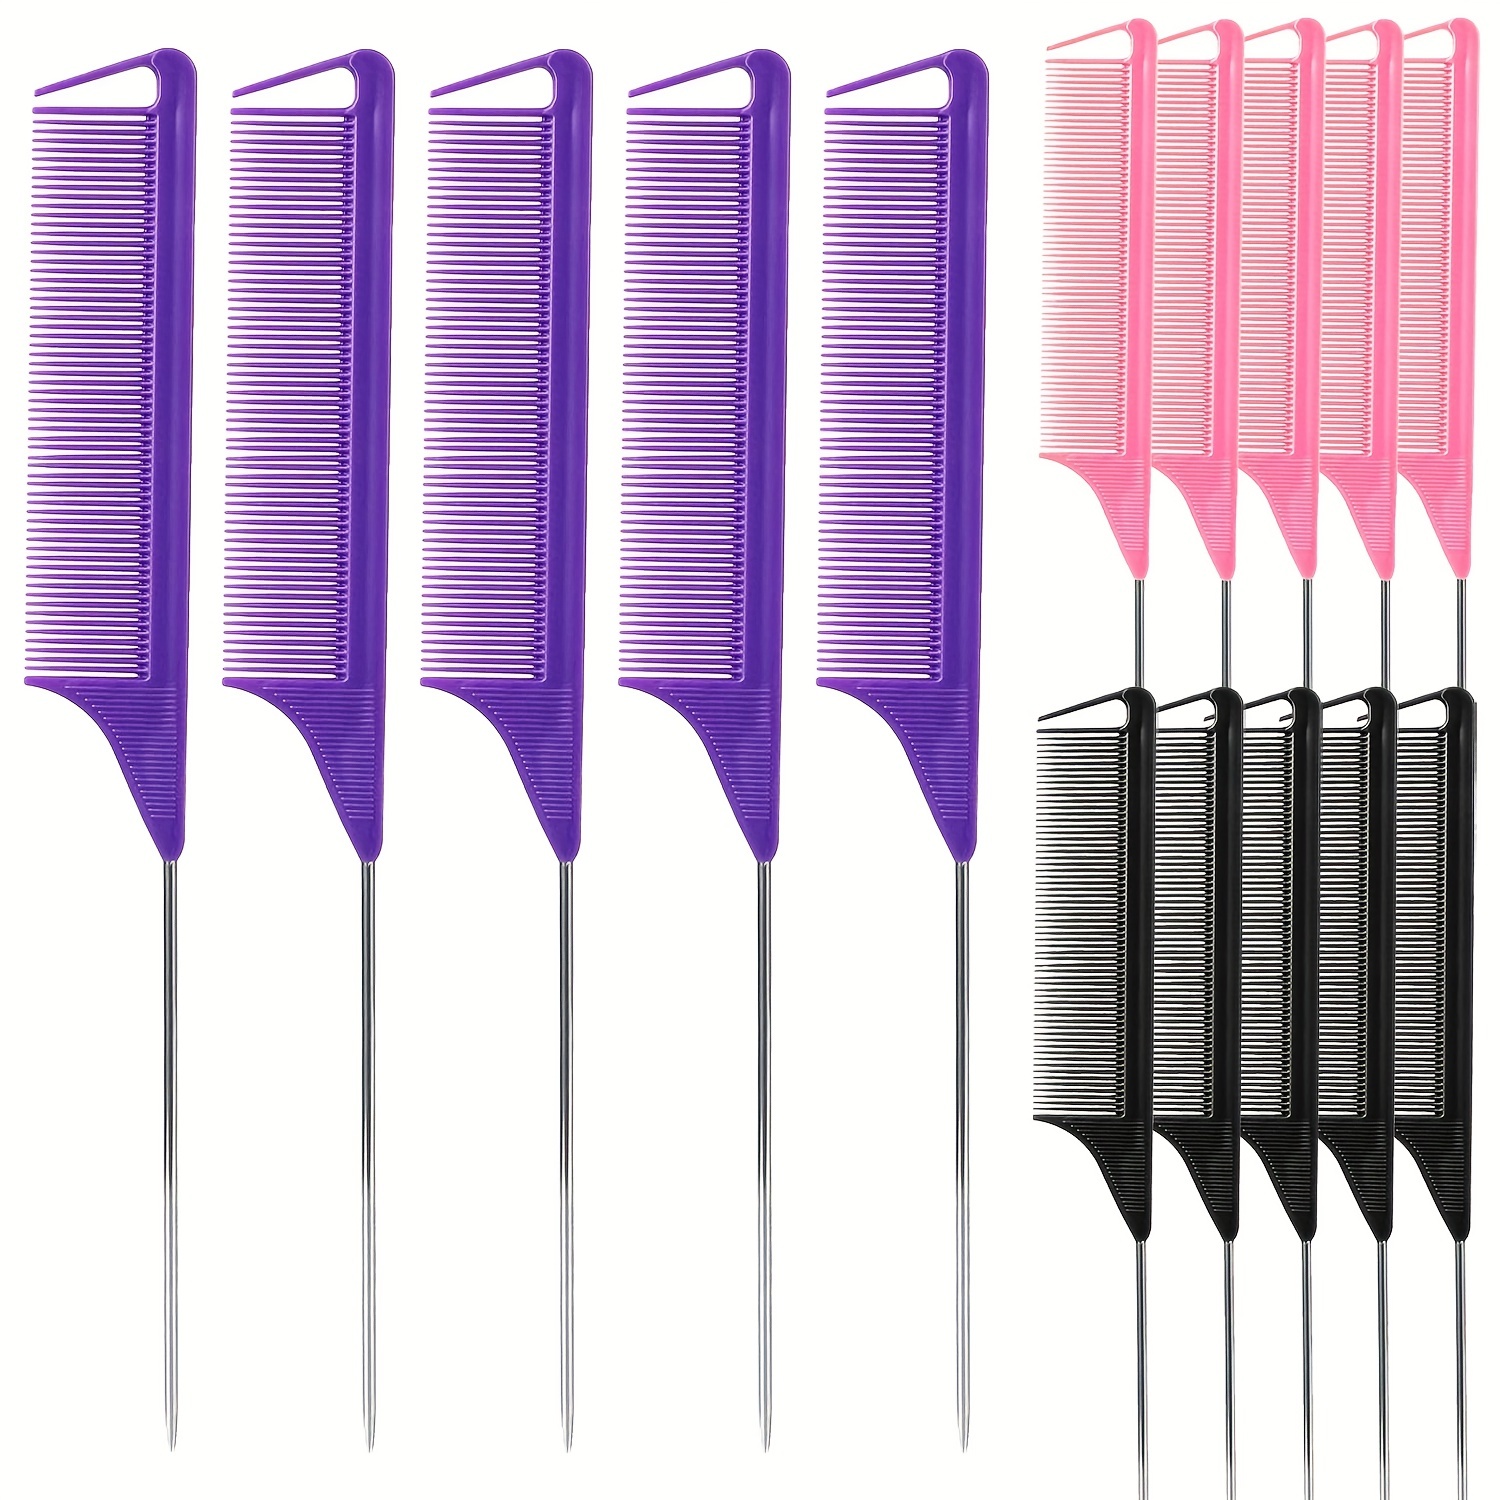 

5pcs Rat Tail Comb Set For Hair Styling Rat Tail Combs Parting Combs Metal Long Steel Pin Rat Tail Teasing Combs Professional Hair Styling Combs